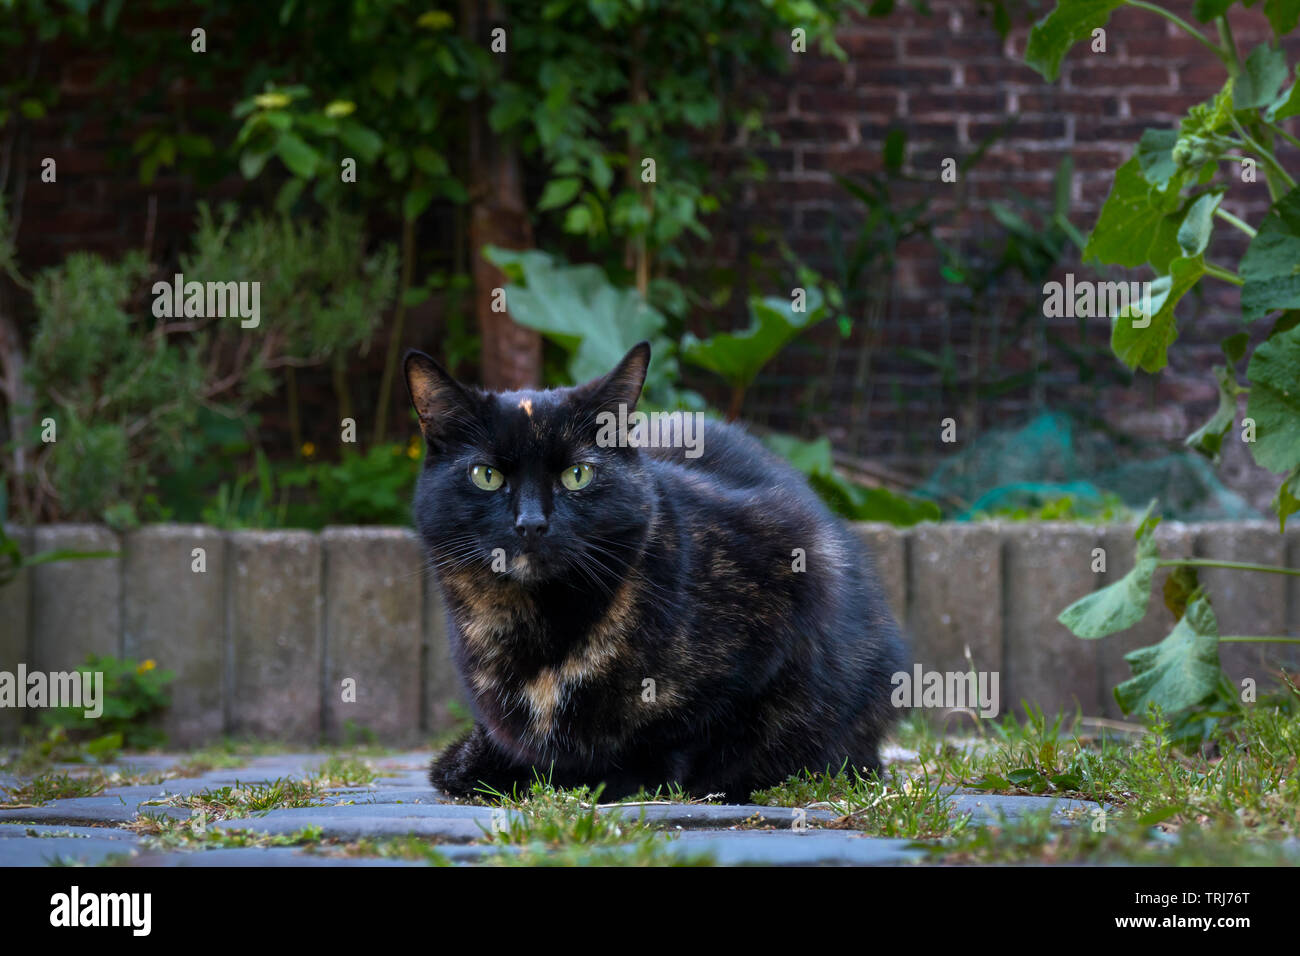 Gato negro con ojos azules sentado en el jardín mirando a la cámara Foto de stock